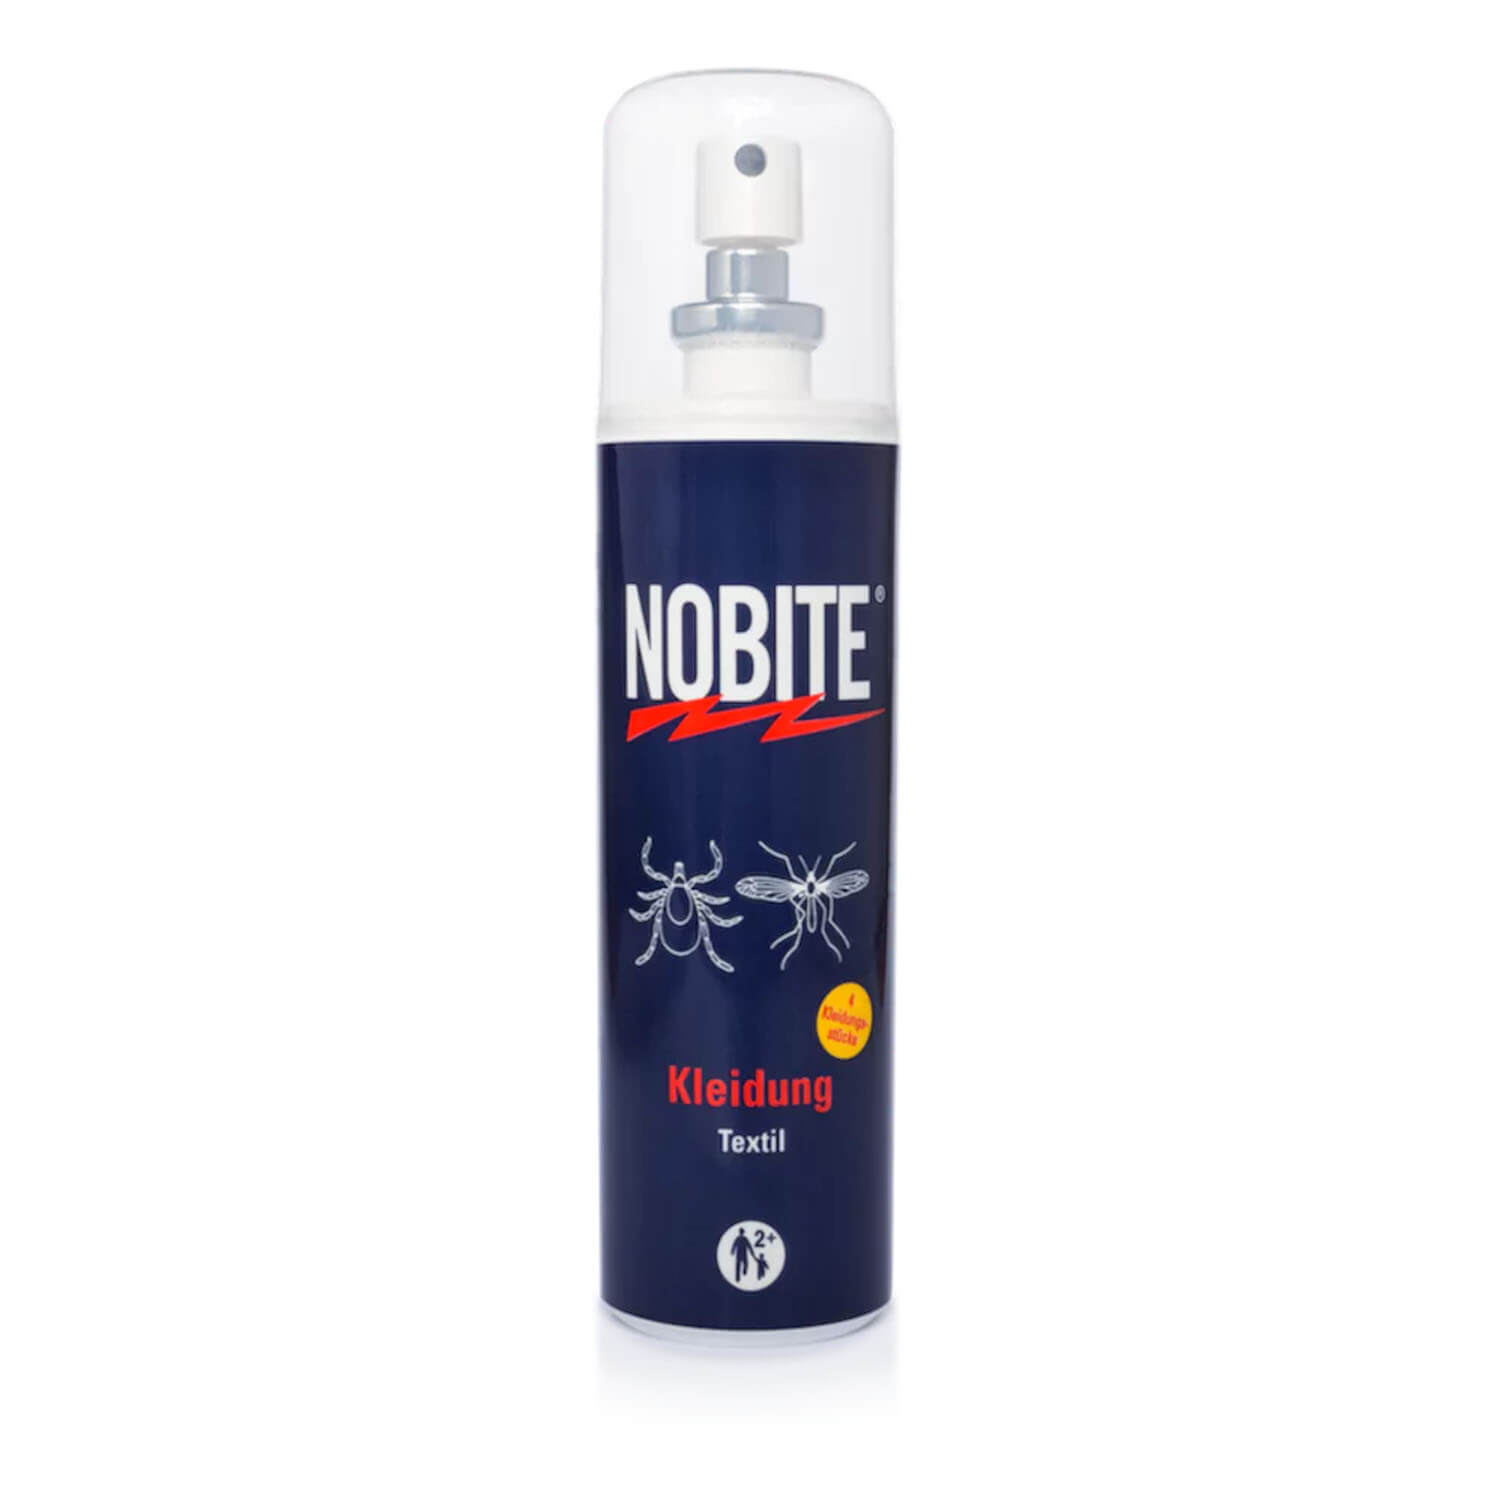 Nobite insectenbescherming Kleding spray 100ml - Insecten- & tekenbescherming